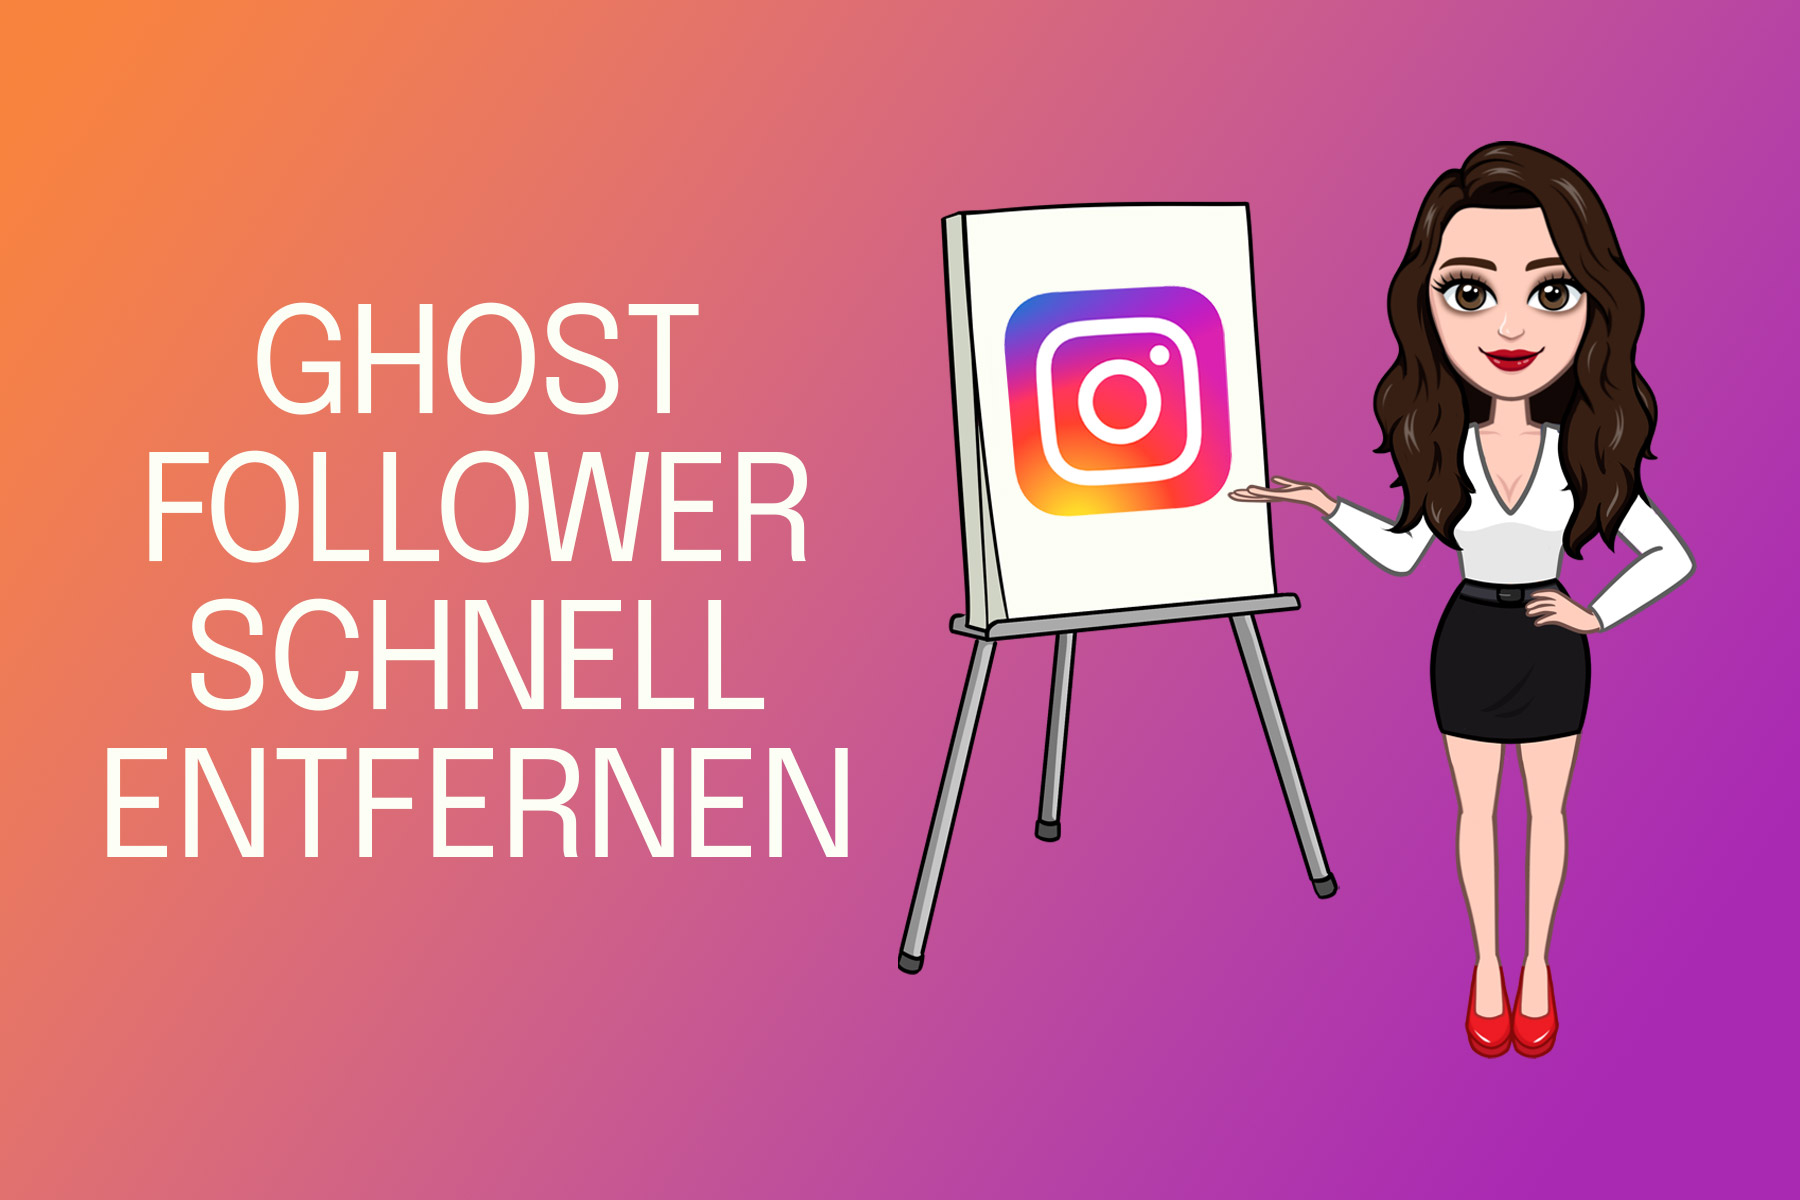 Ghost Follower bei Instagram - Was sind Ghost Follower? Wie entfernen?